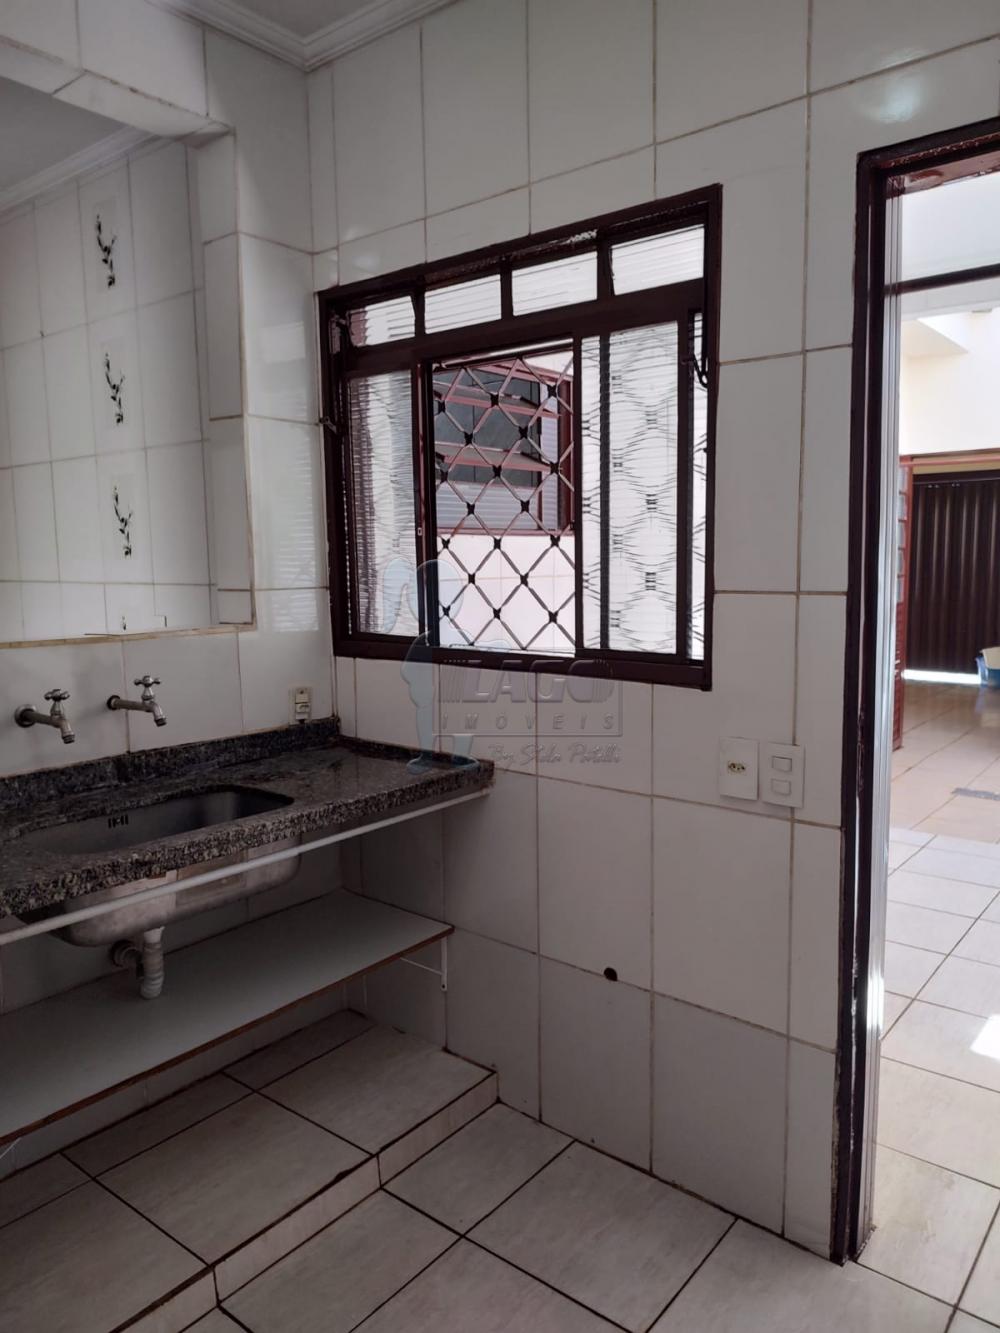 Alugar Casa / Padrão em Ribeirão Preto R$ 1.200,00 - Foto 6